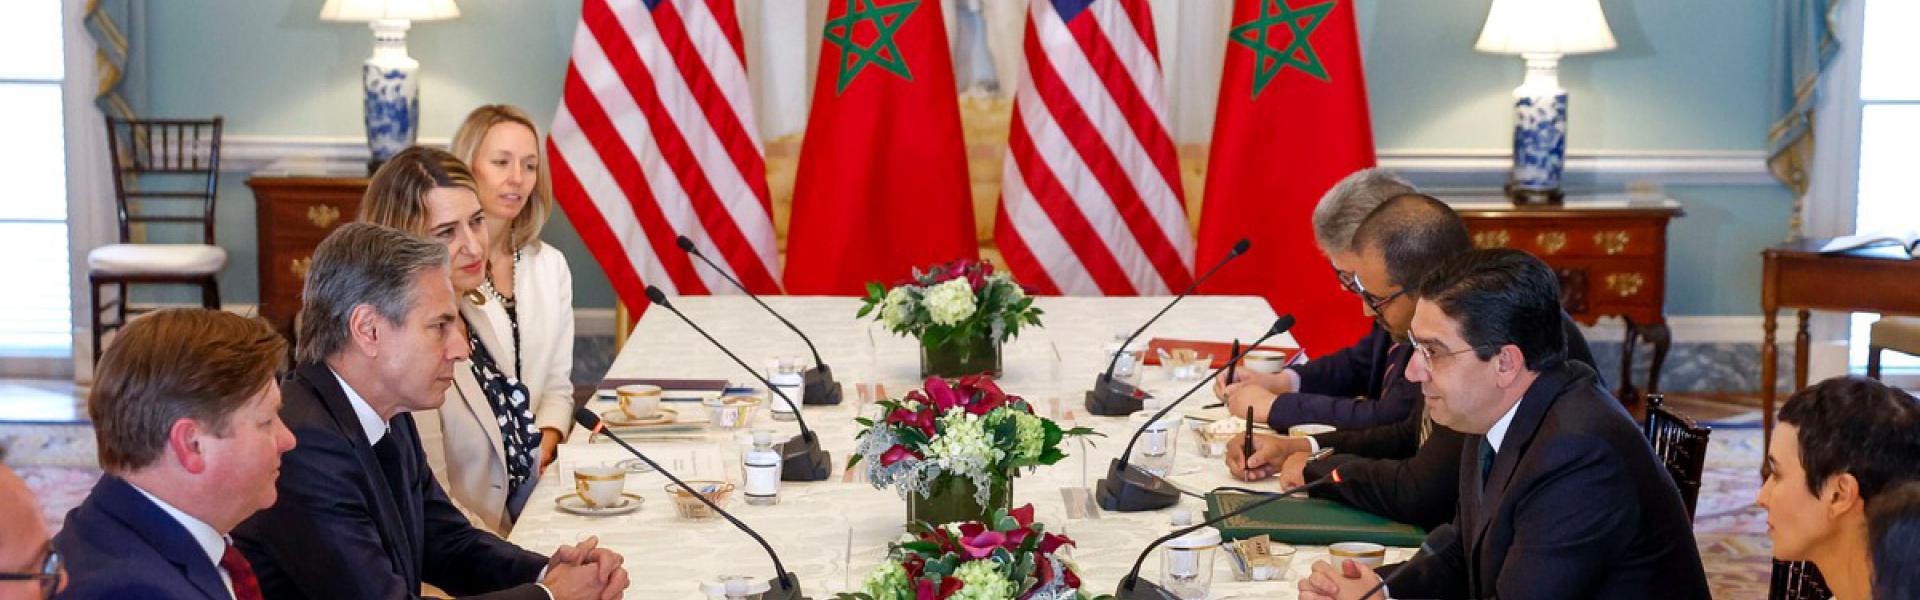 الشراكة مع المغرب تتماشى مع الأهداف الإقليمية لكلا البلدين